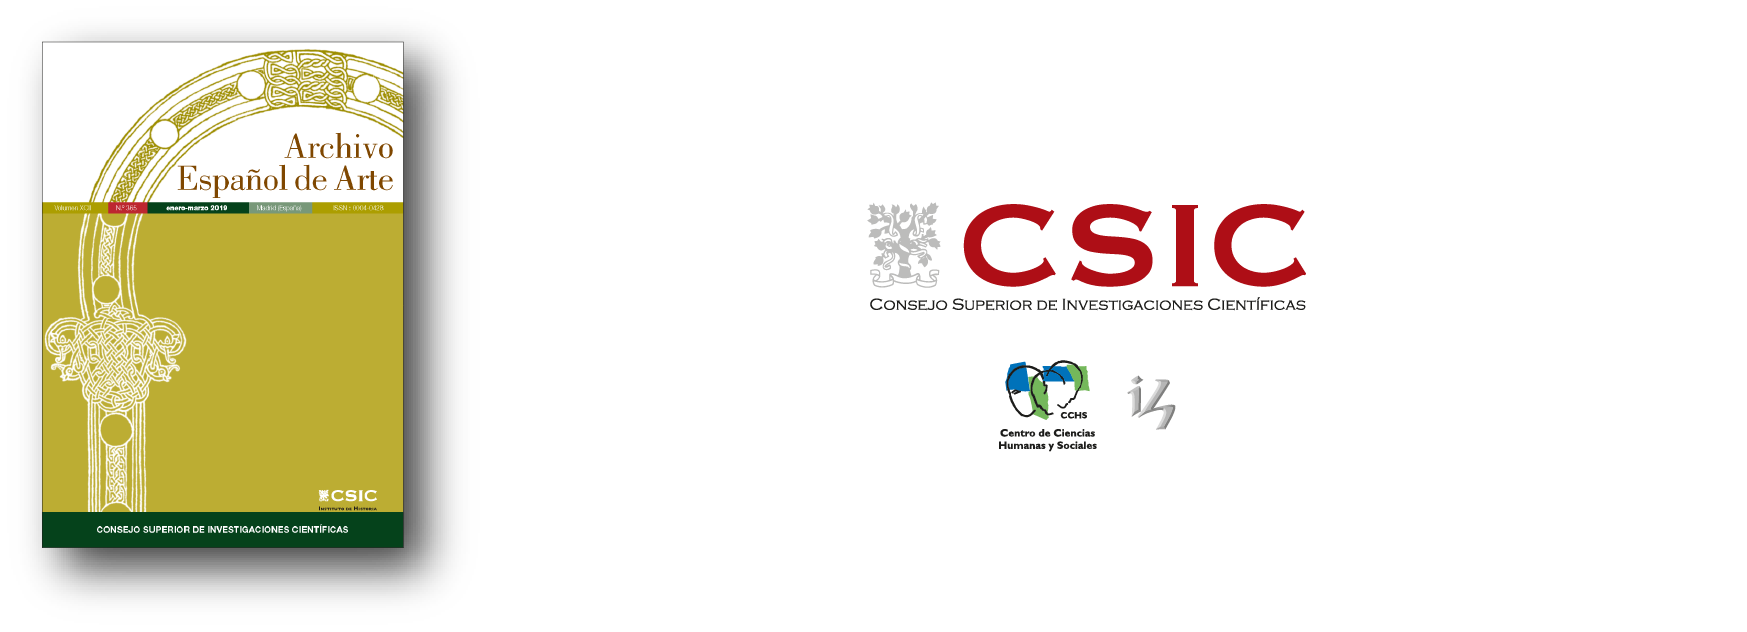 Banderola de la revista, compuesta de una cubierta, logo del CSIC, logo del Centro de Ciencias Humanas y Sociales y logo del Instituto de Historia